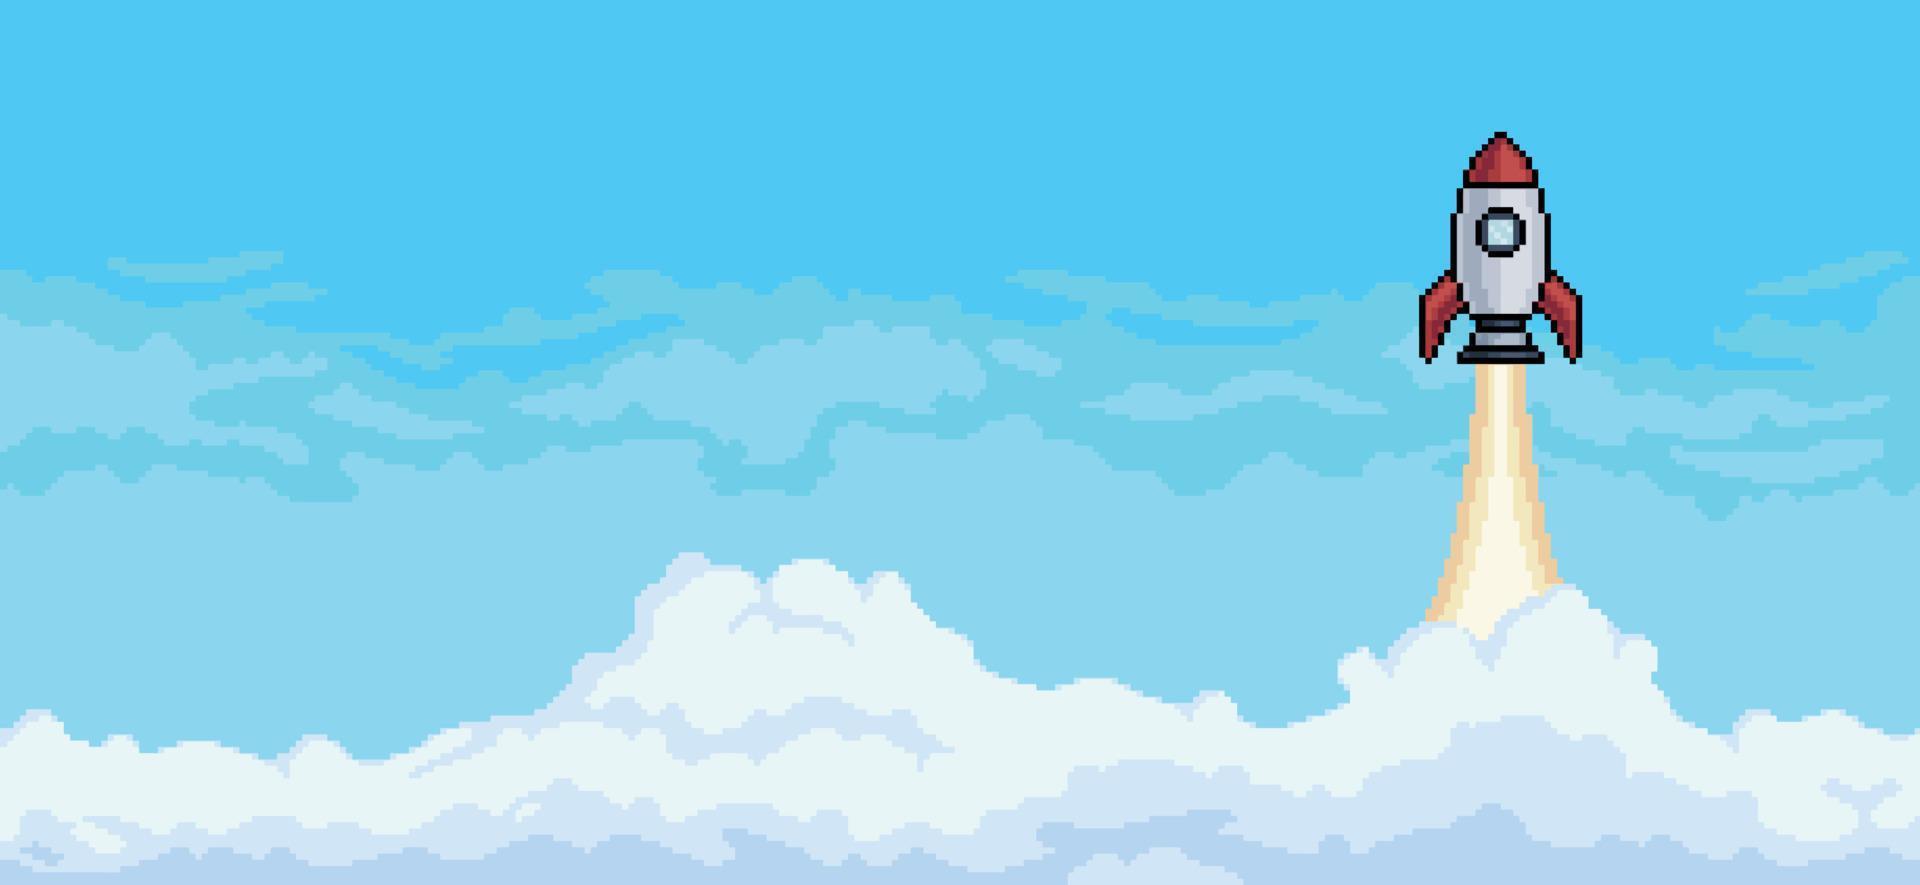 pixel konst bakgrund med raket flygande i himmel med moln bakgrund vektor för 8 bit spel